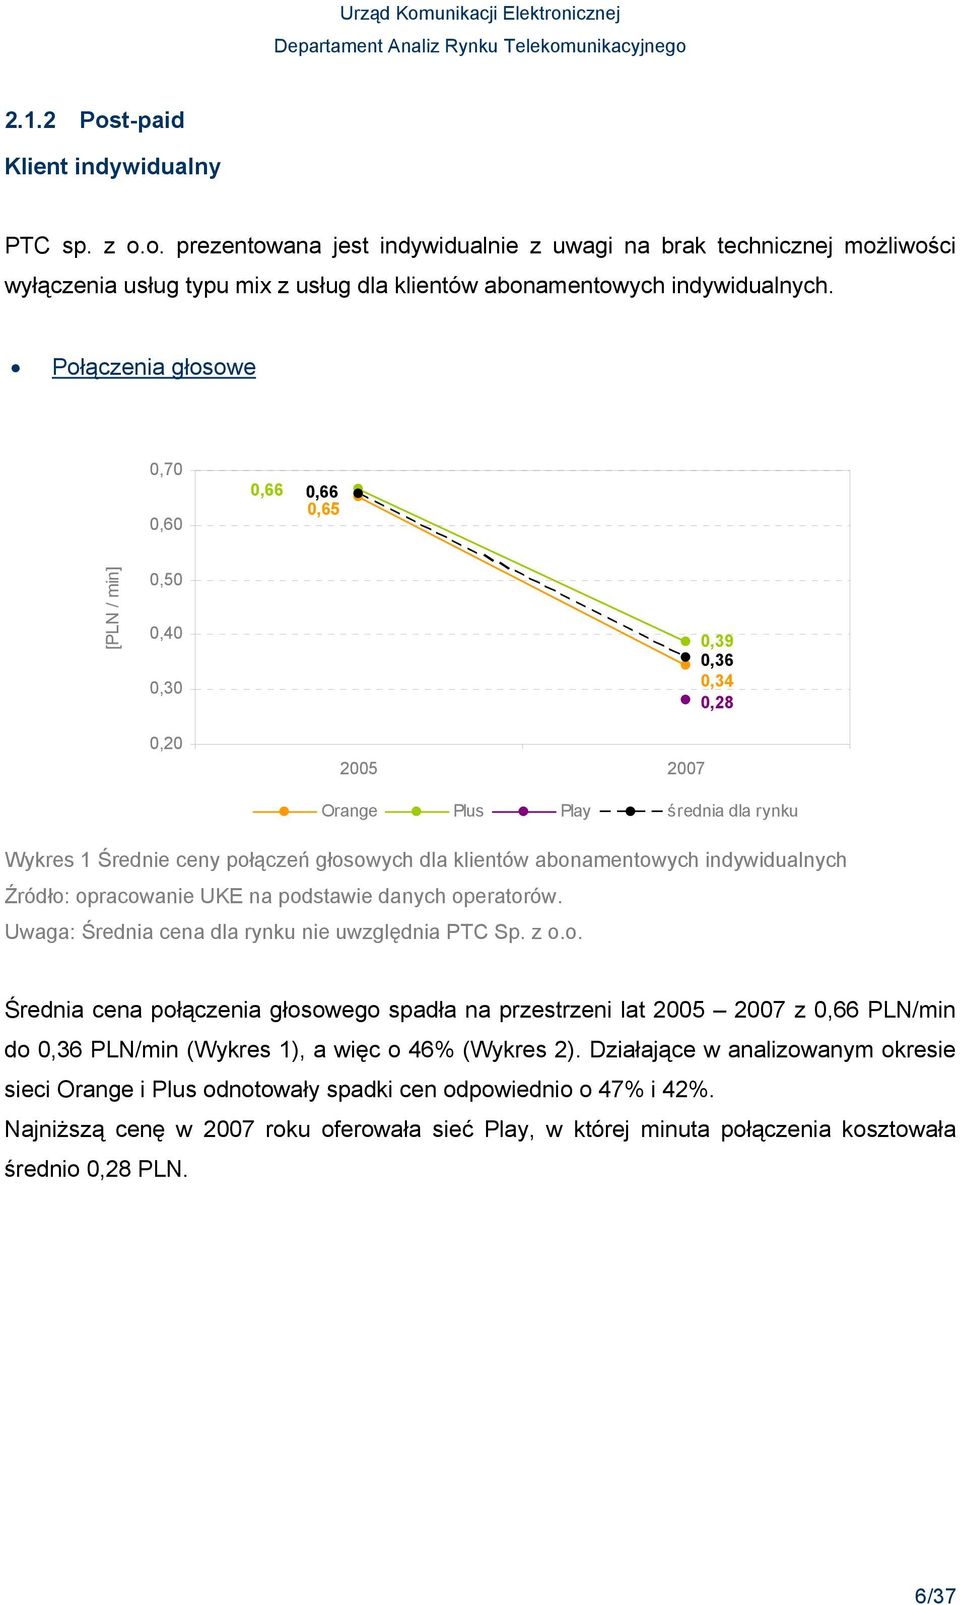 abonamentowych indywidualnych Uwaga: Średnia cena dla rynku nie uwzględnia PTC Sp. z o.o. Średnia cena połączenia głosowego spadła na przestrzeni lat 2005 2007 z 0,66 PLN/min do 0,36 PLN/min (Wykres 1), a więc o 46% (Wykres 2).